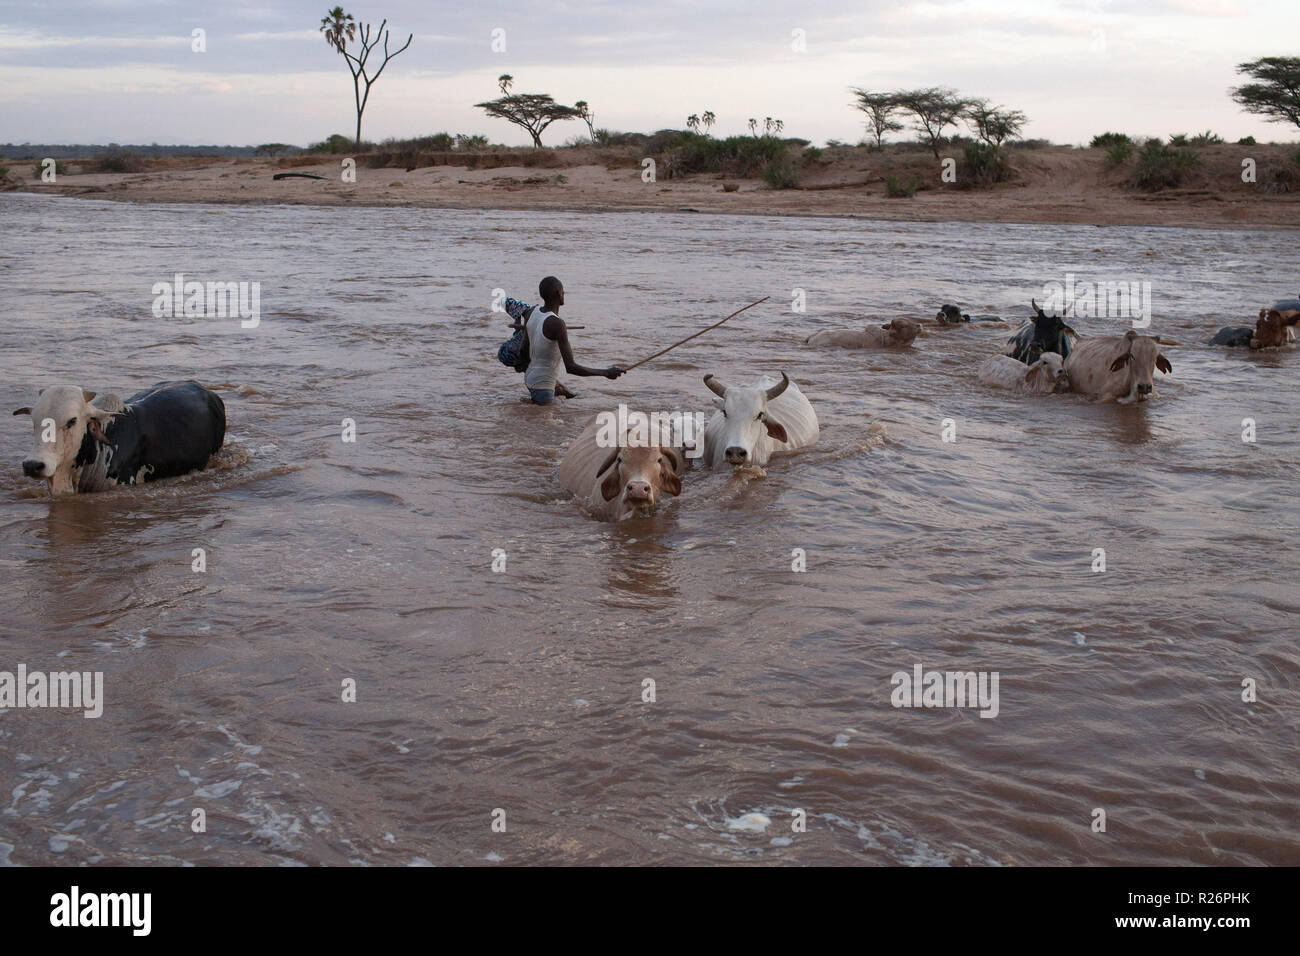 Un homme traverse une rivière avec son bétail à Samburu, Kenya, le 6 septembre 2012. Banque D'Images